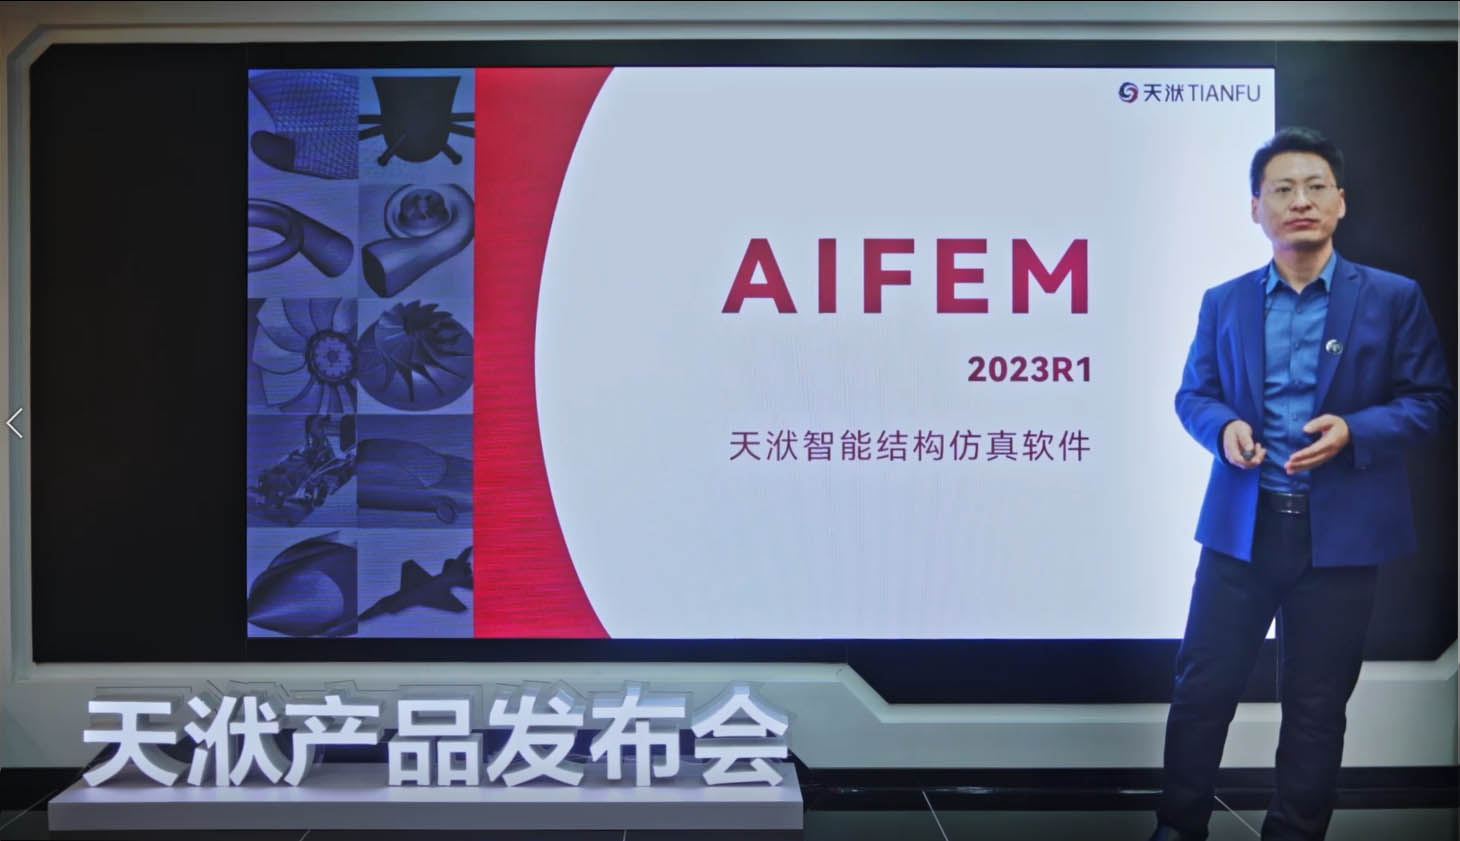 智能结构仿真软件 - AIFEM 2023R1版本新功能详解